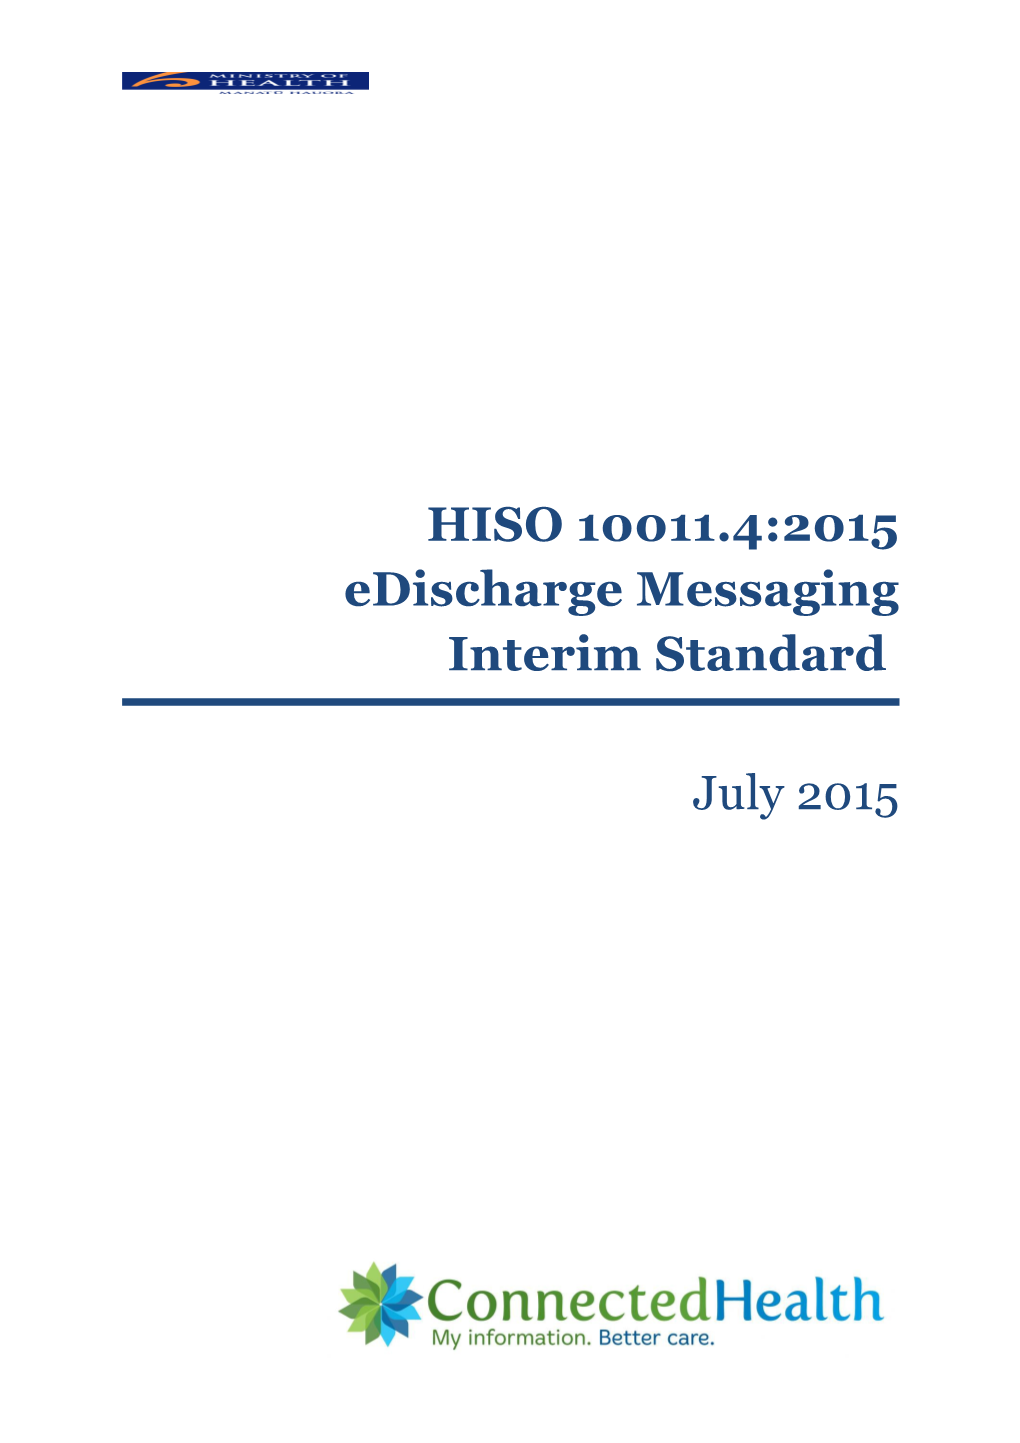 HISO 10011.4:2015 Edischarge Messaging Standard